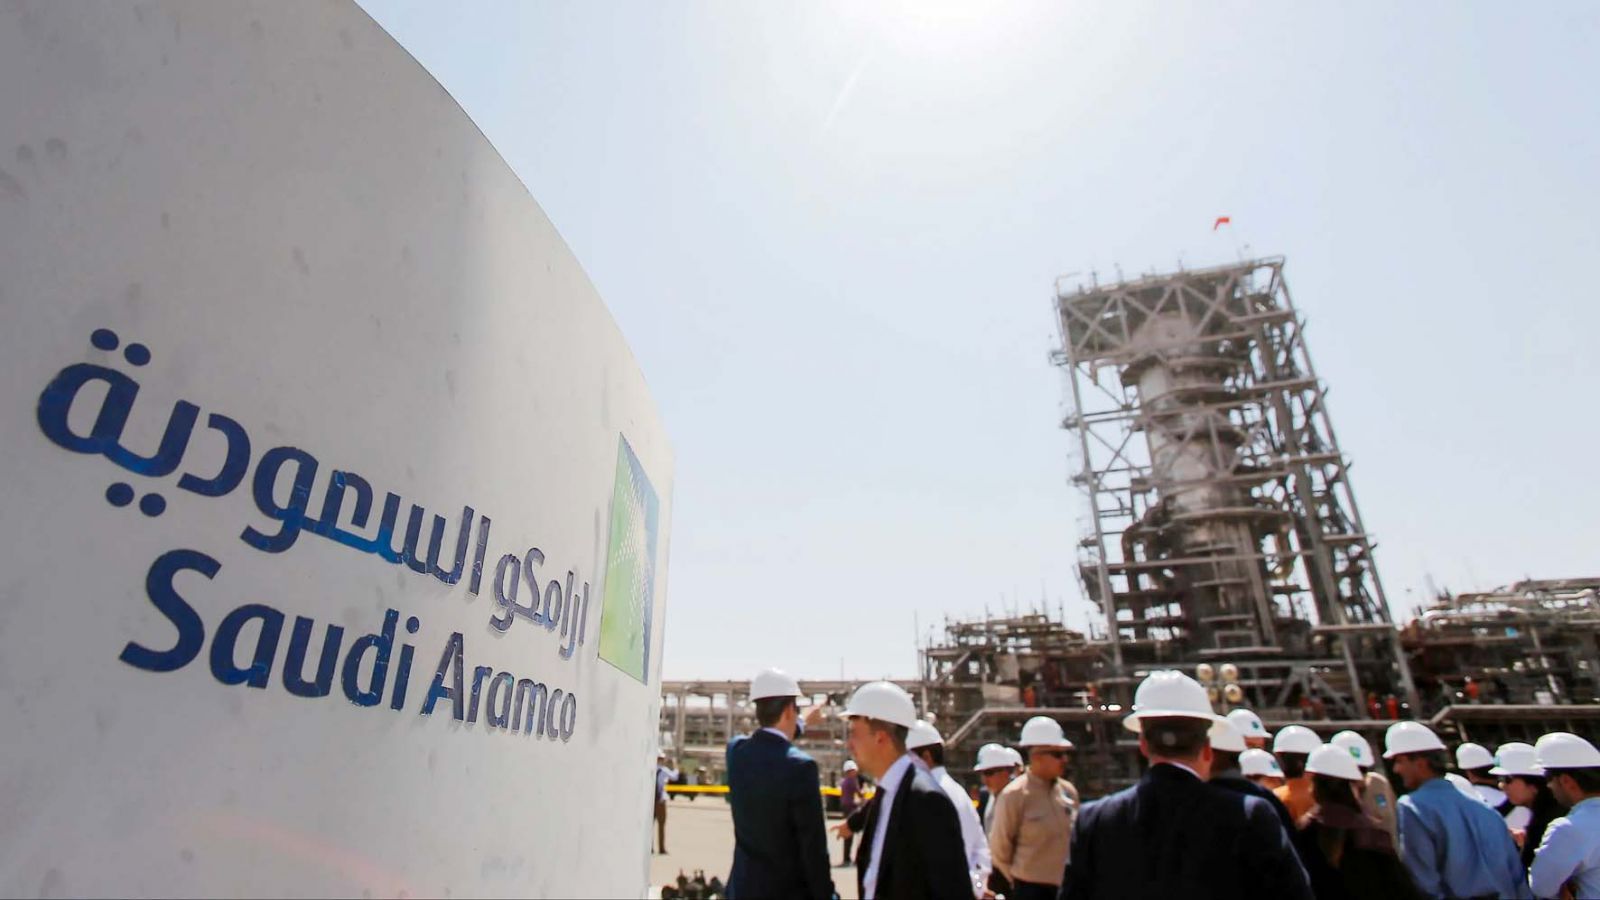  Lợi nhuận ròng quý 2/2020 của Saudi Aramco chỉ đạt 6,6 tỷ USD, giảm 73% so với cùng kỳ năm ngoái.